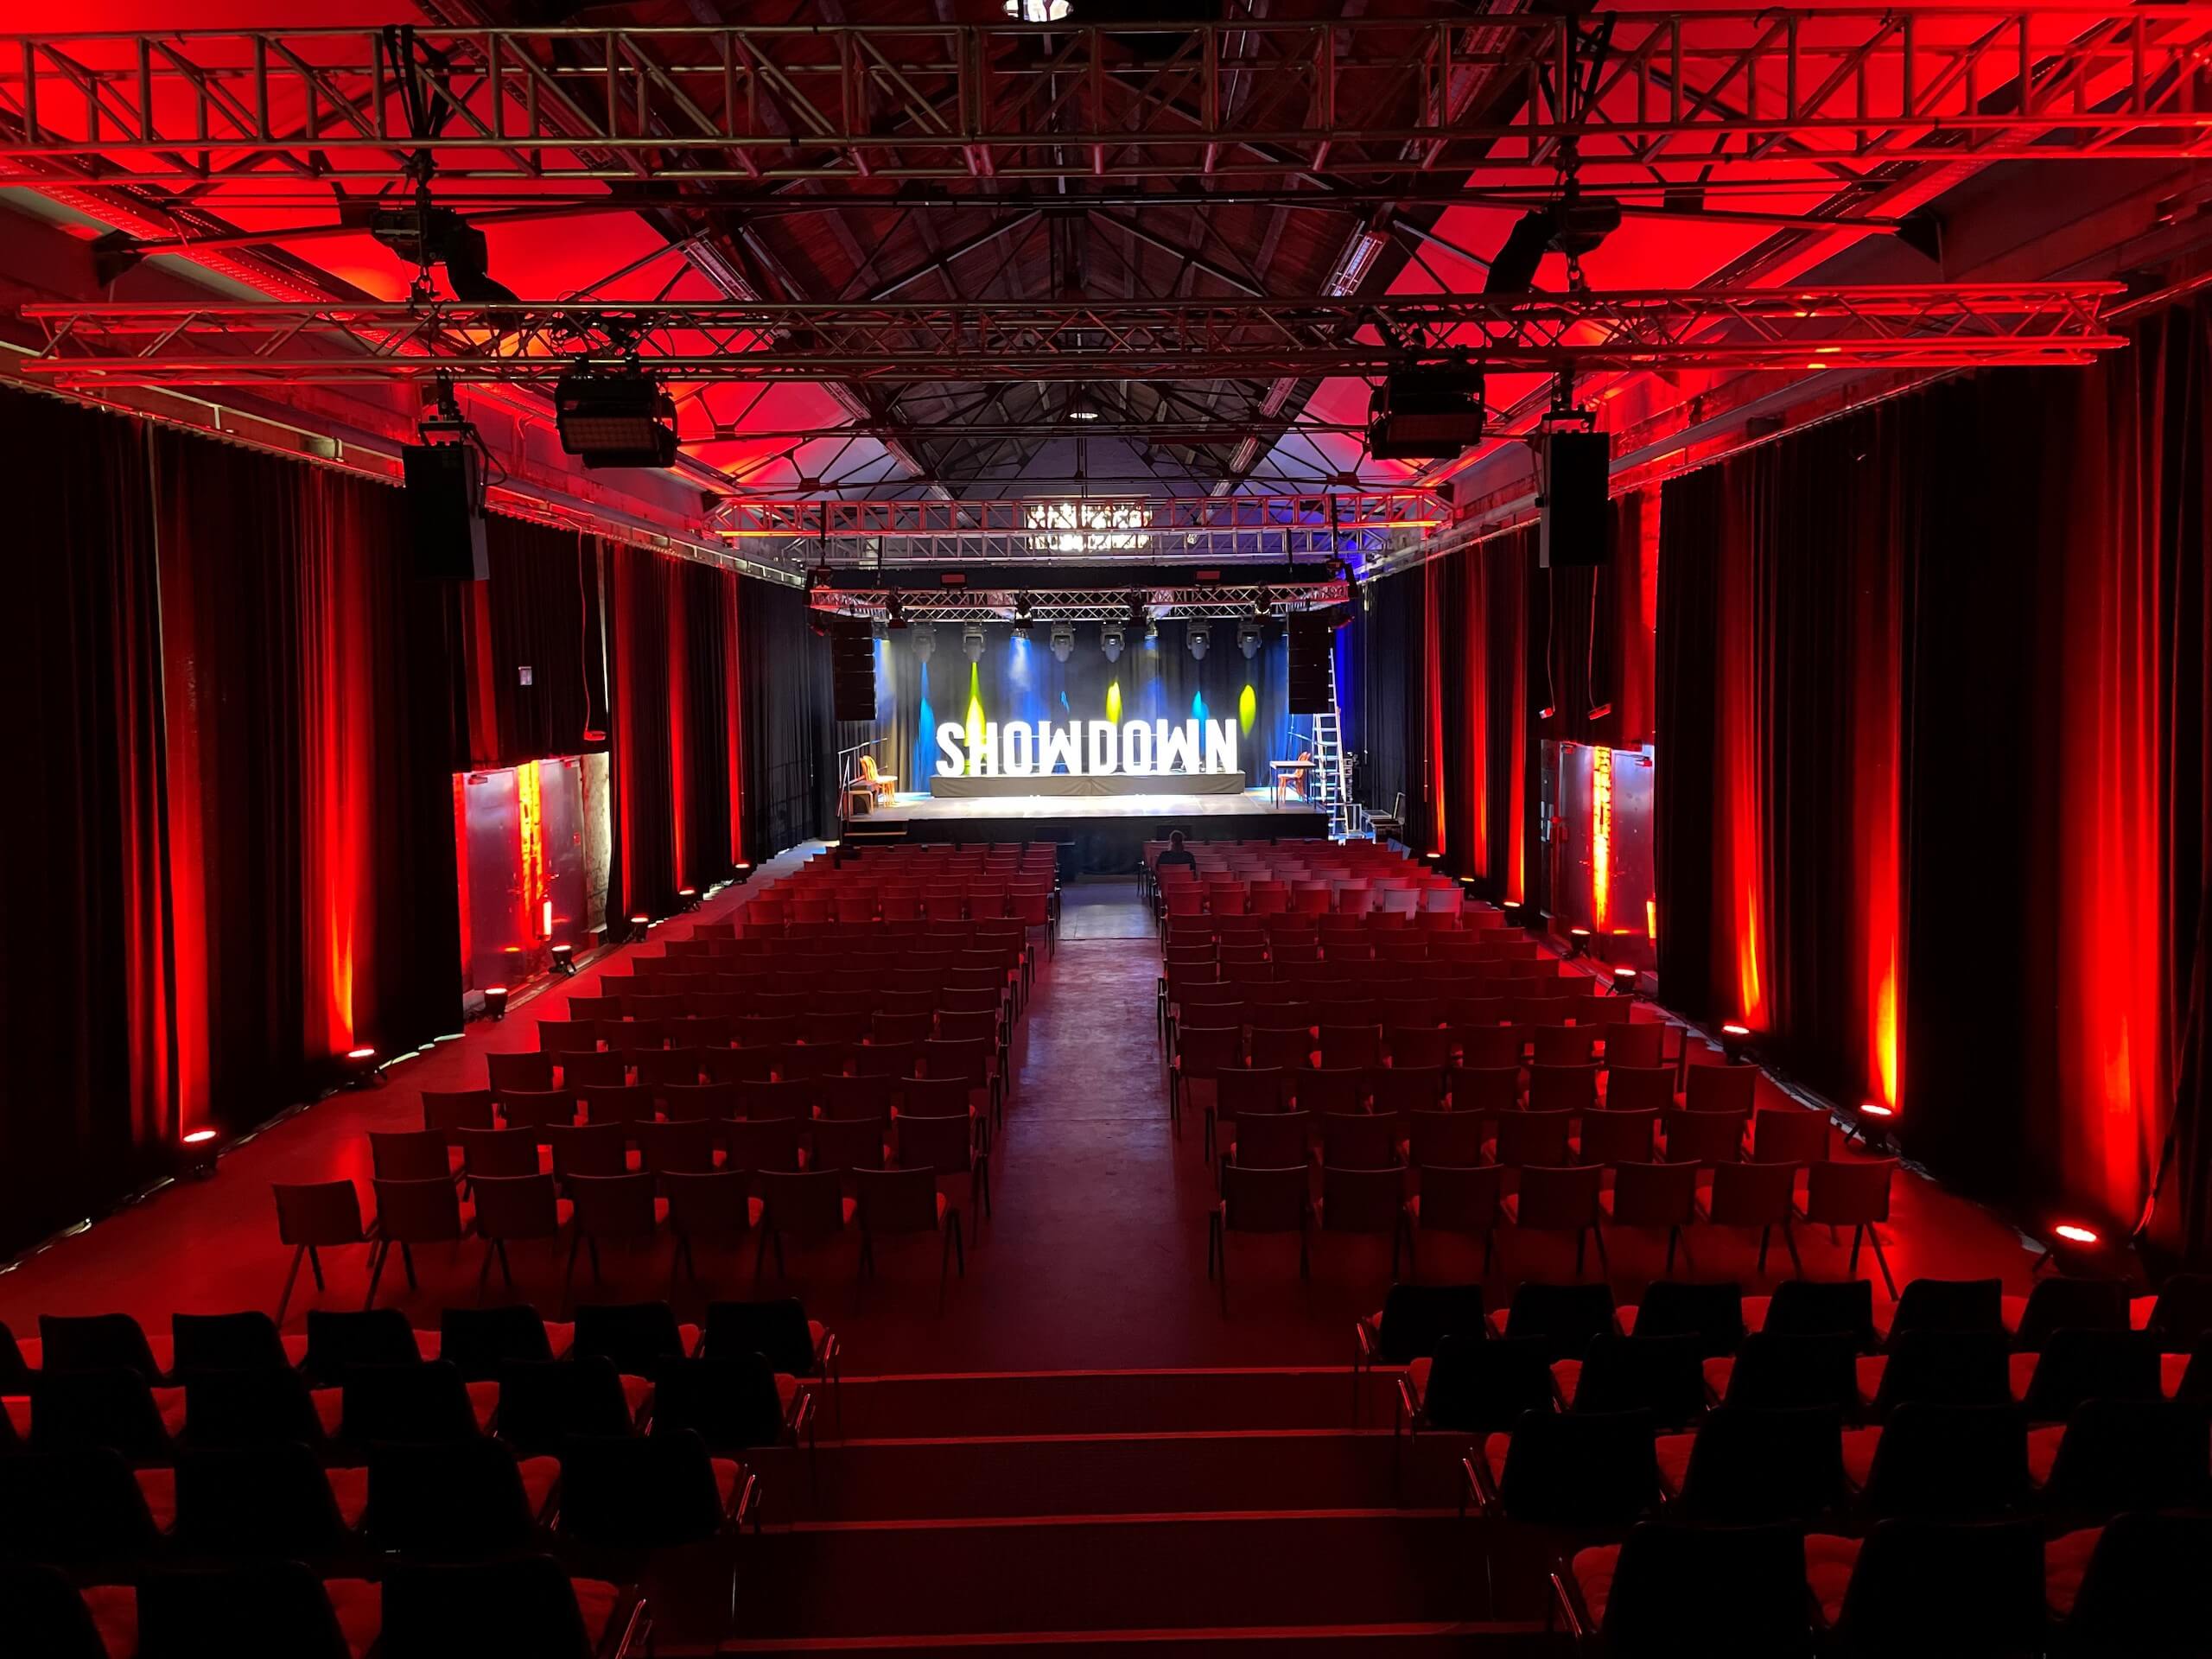 "Showdown" Bühnenbild mit roten Lichtelementen auf den Seitenwänden der Halle